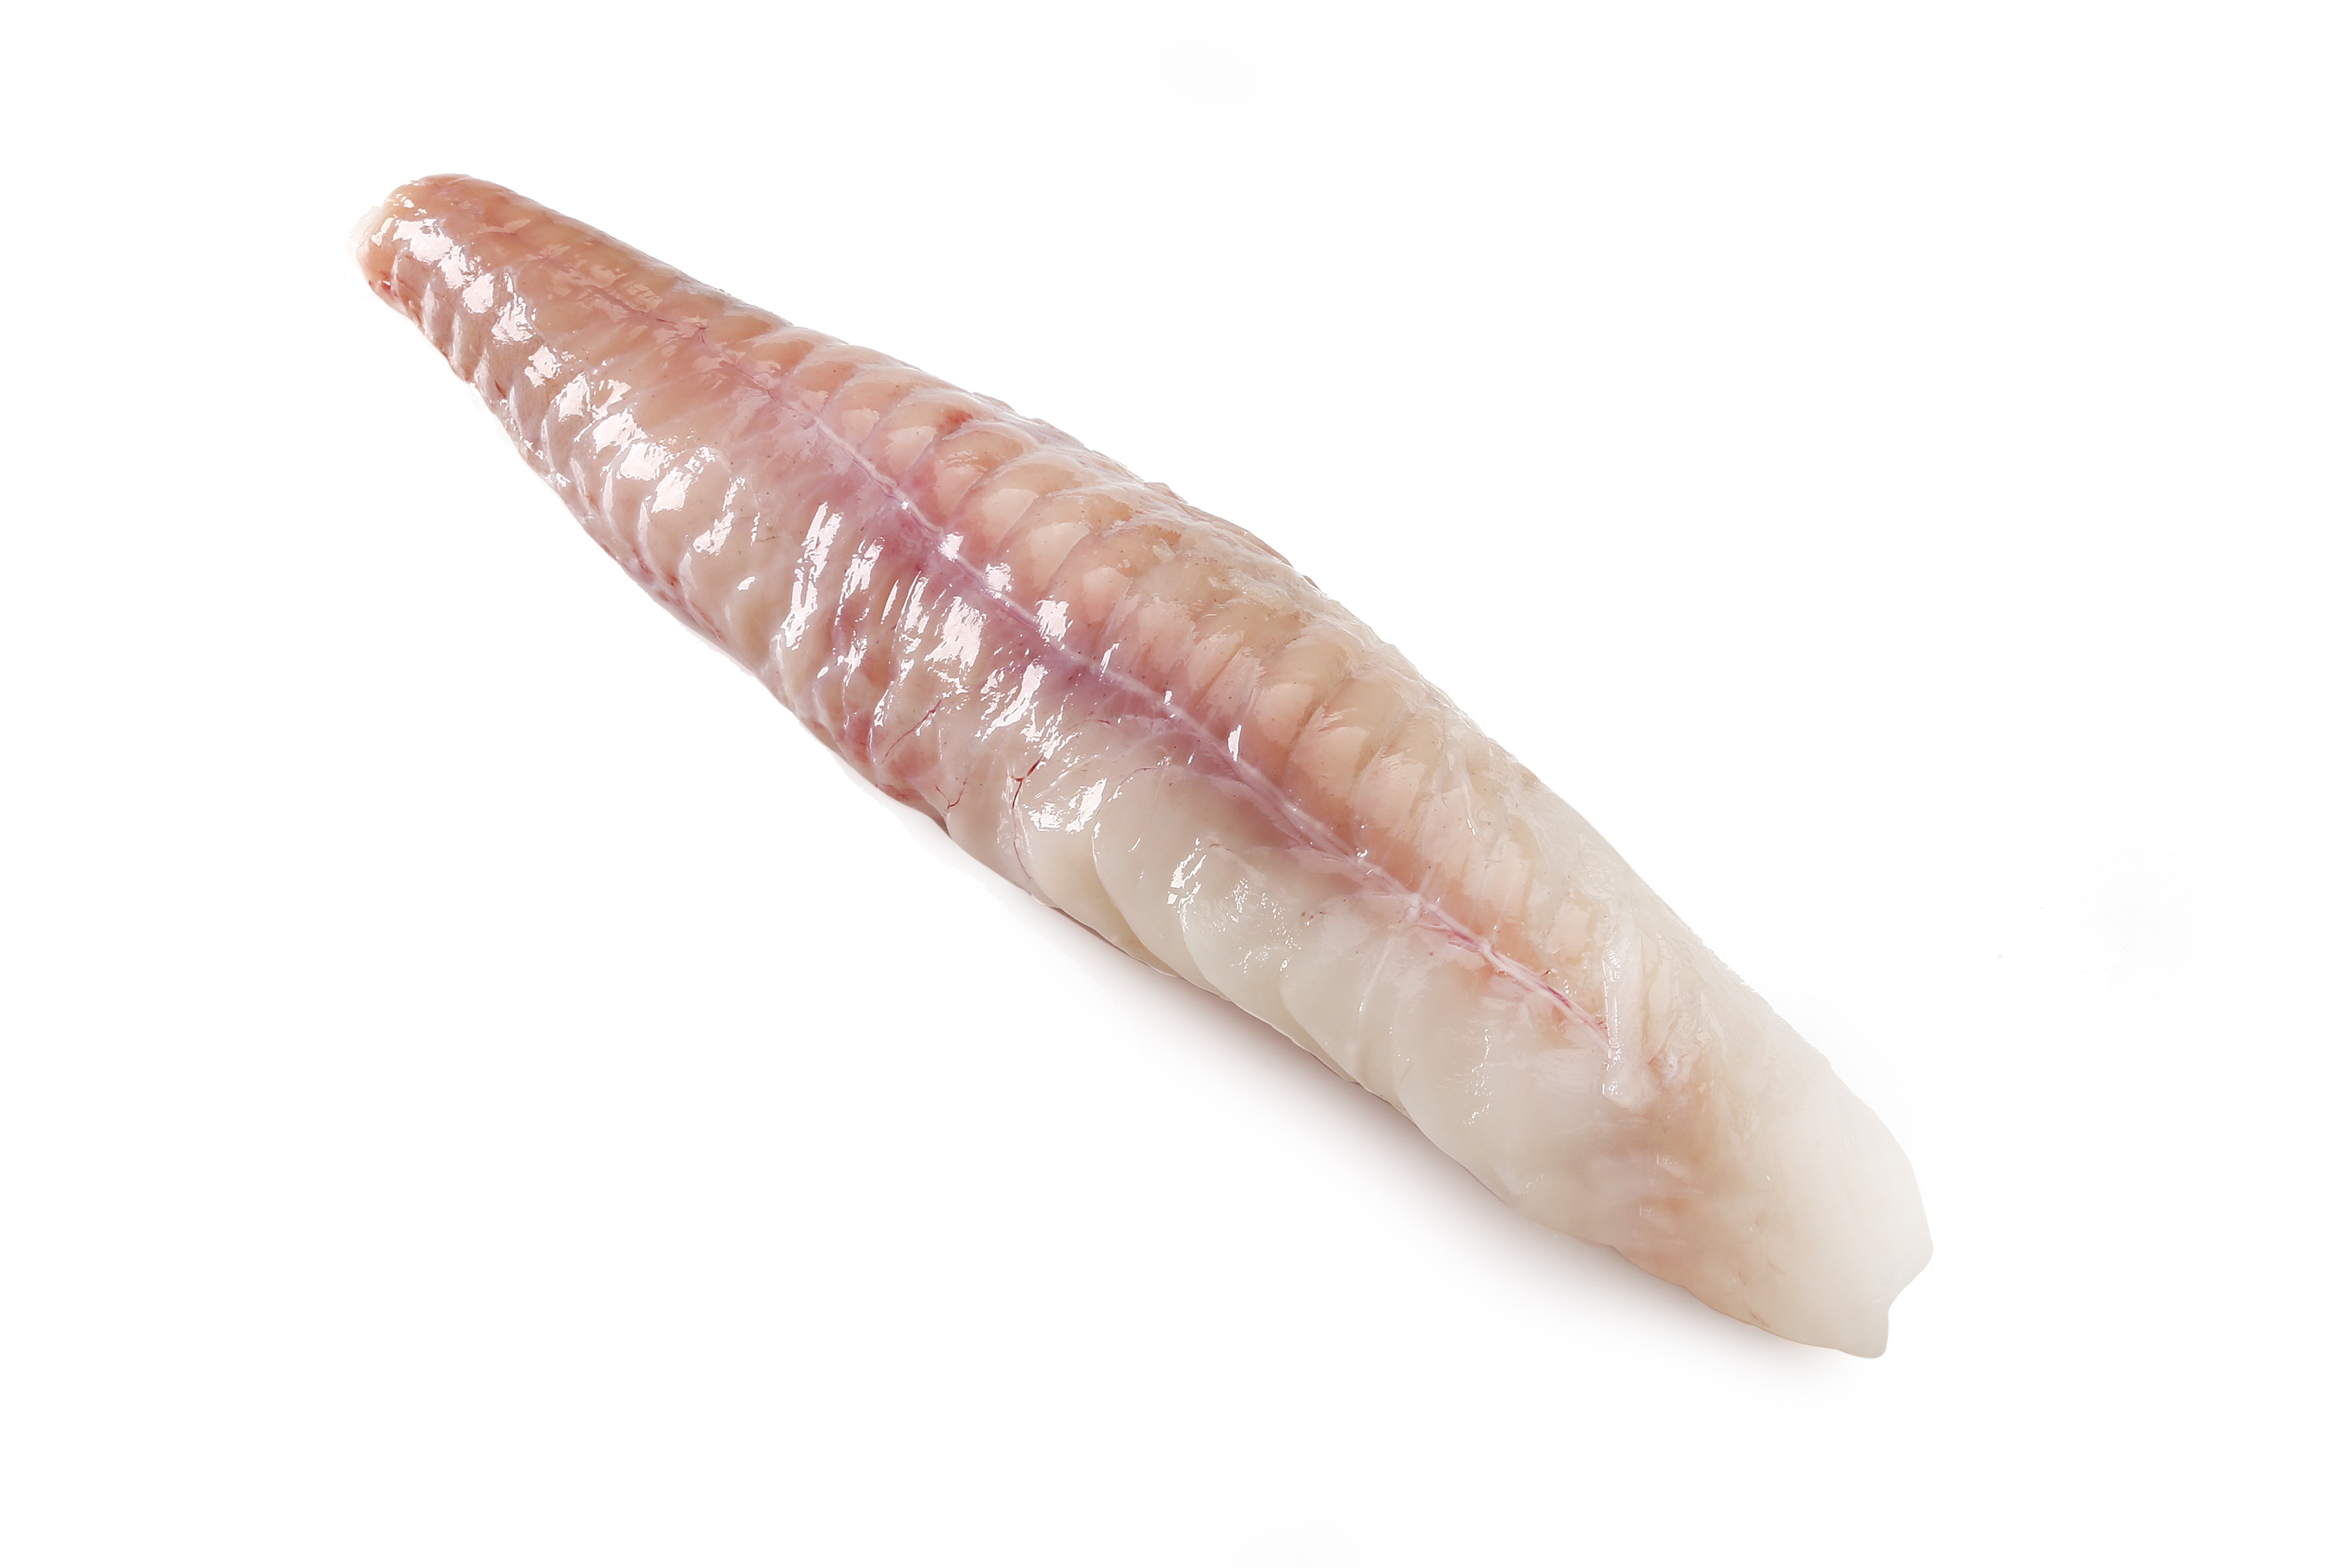 49943 Ham / zeeduivel 1-2 kg - filet zonder vel dubbel gevliesd geportioneerd